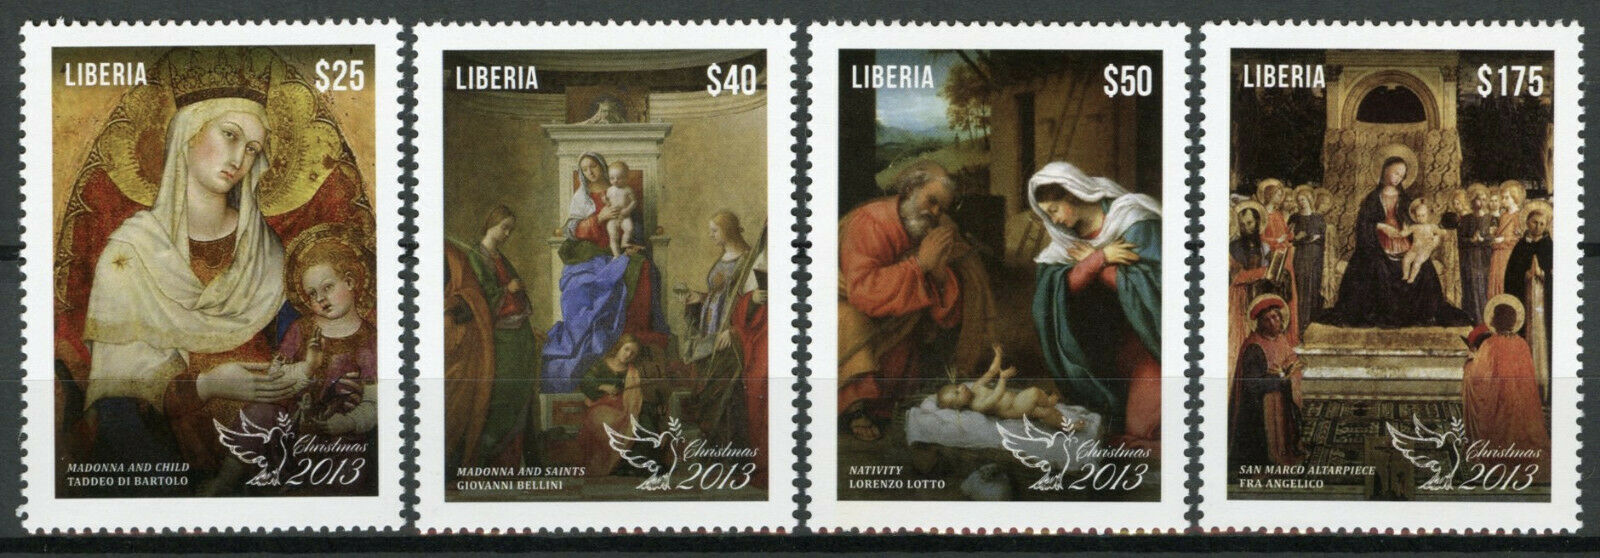 Liberia Christmas Stamps 2013 MNH Art Paintings Fra Angelico Bartolo 4v Set